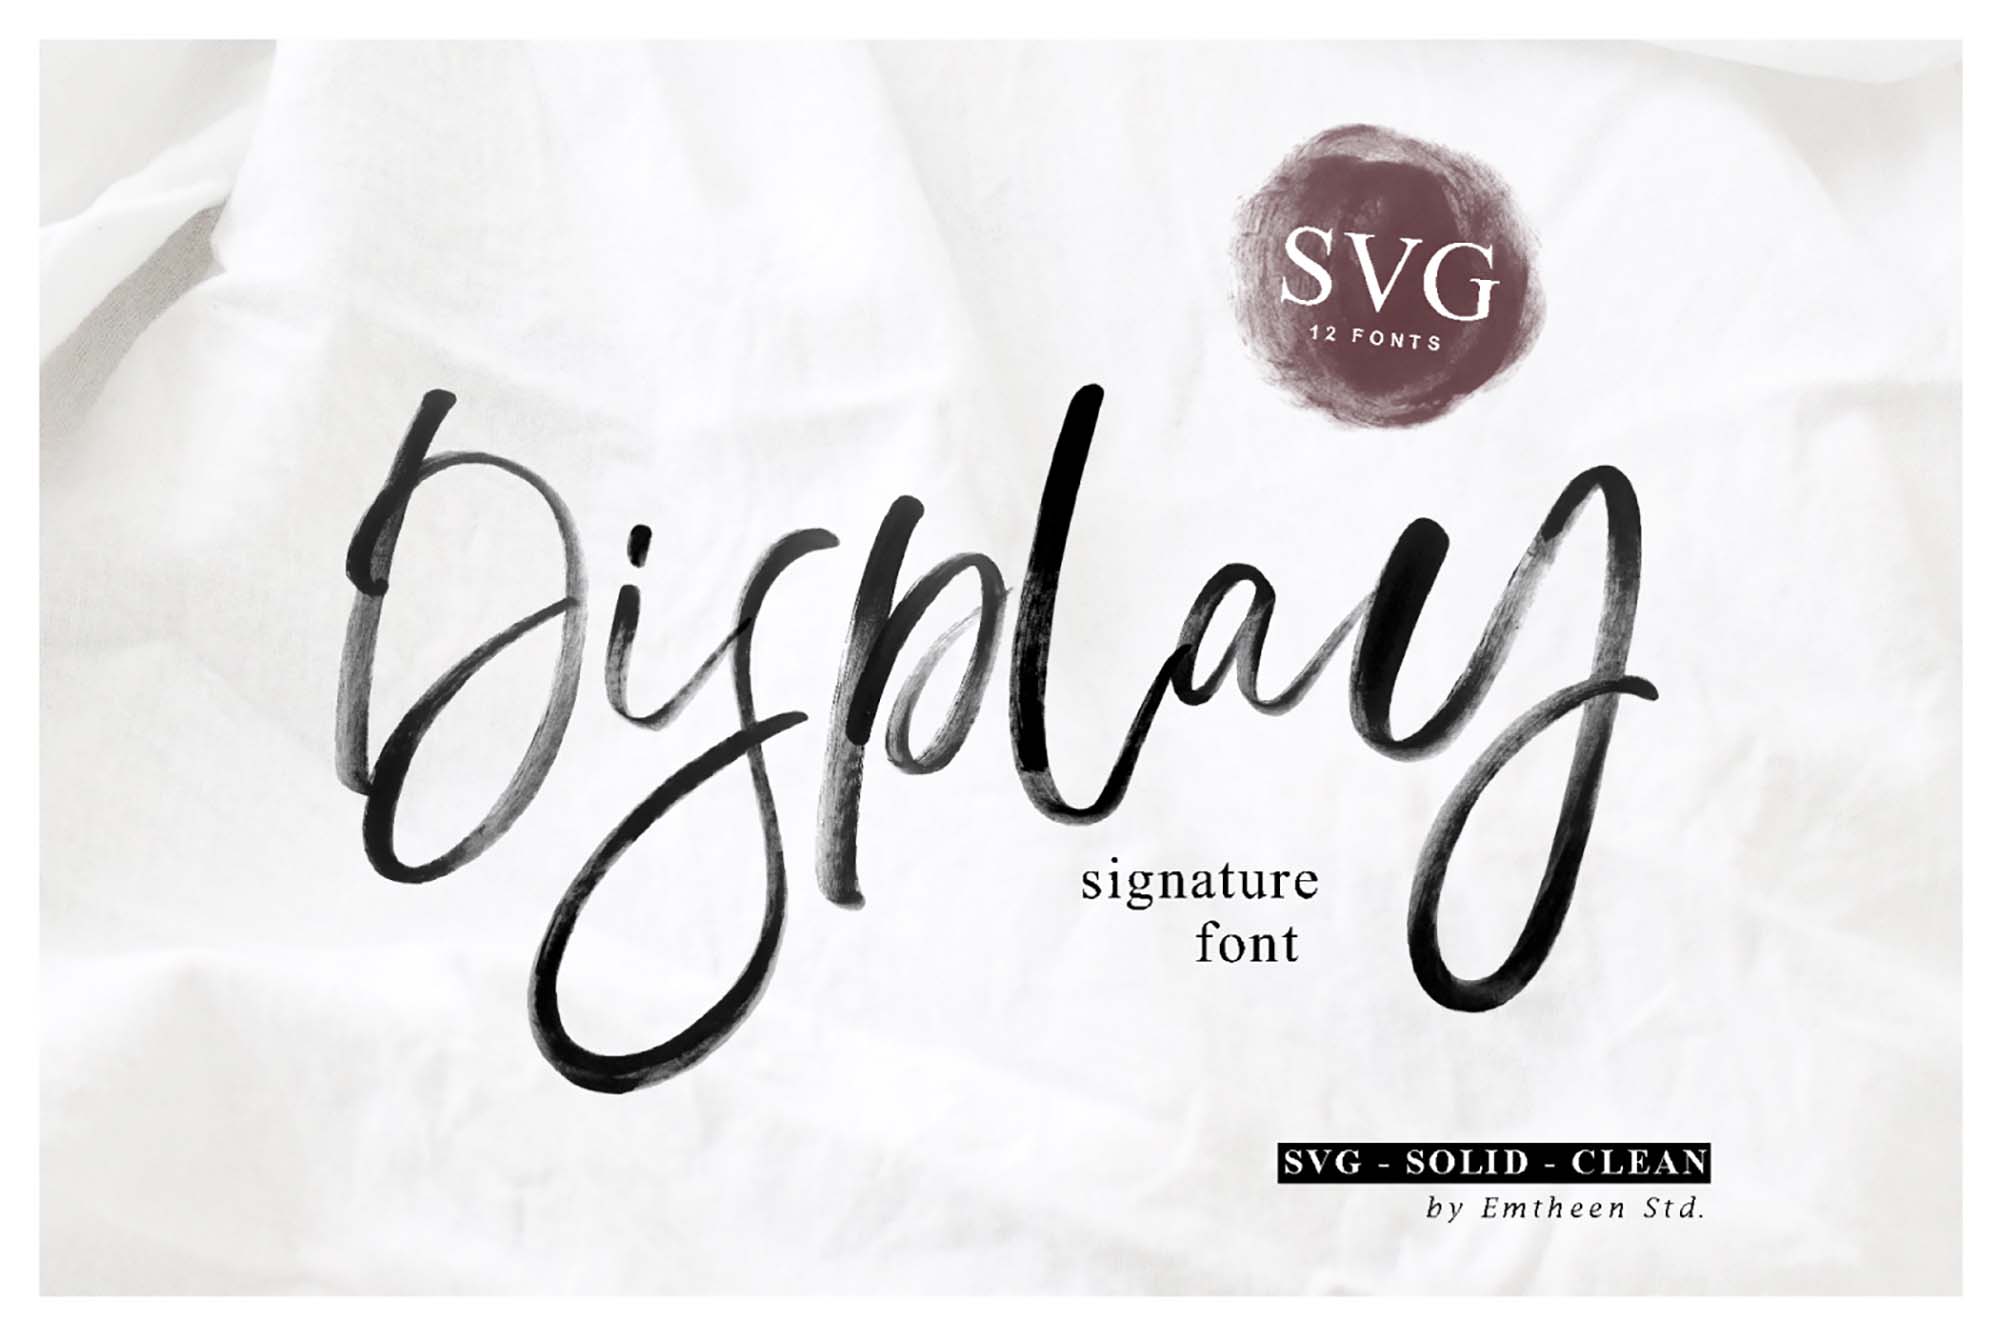 Display Signature Font (SVG)